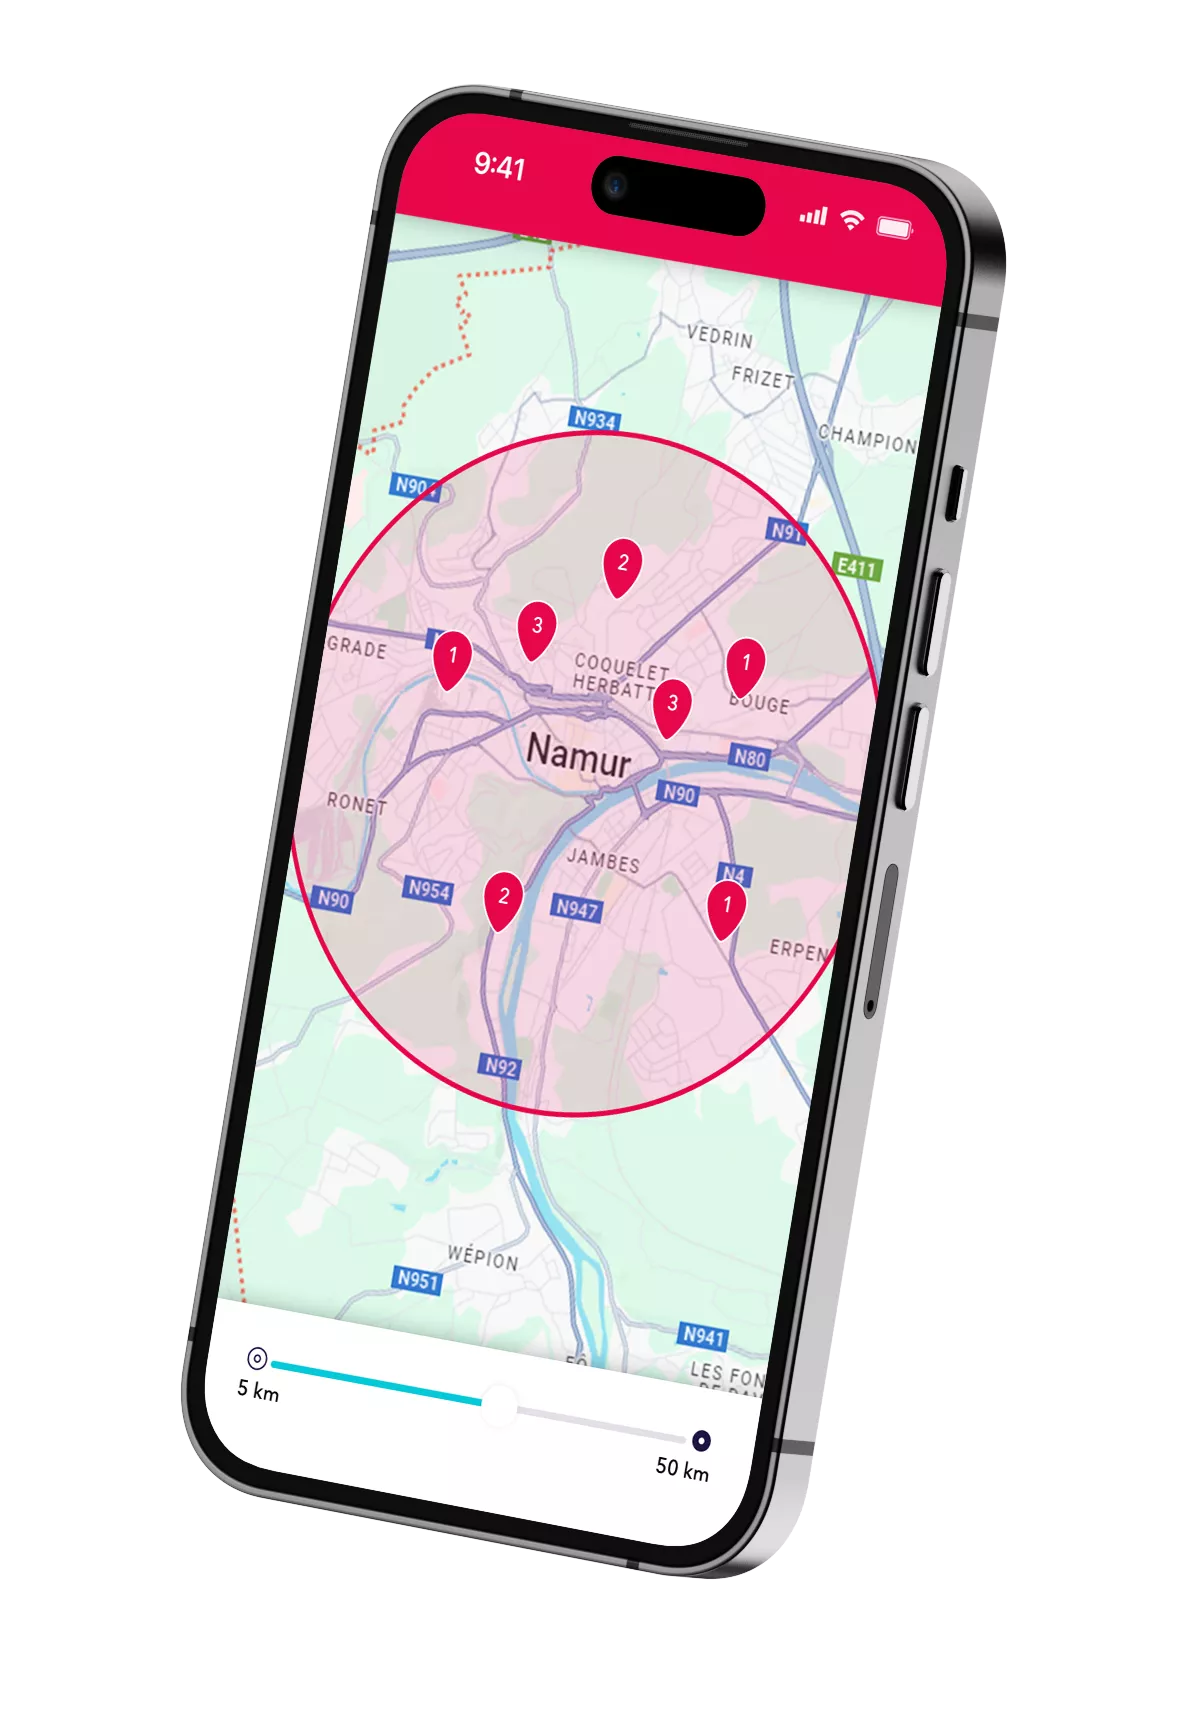 Un smartphone montrant les possibilités de jobs étudiant dans la région de Namur